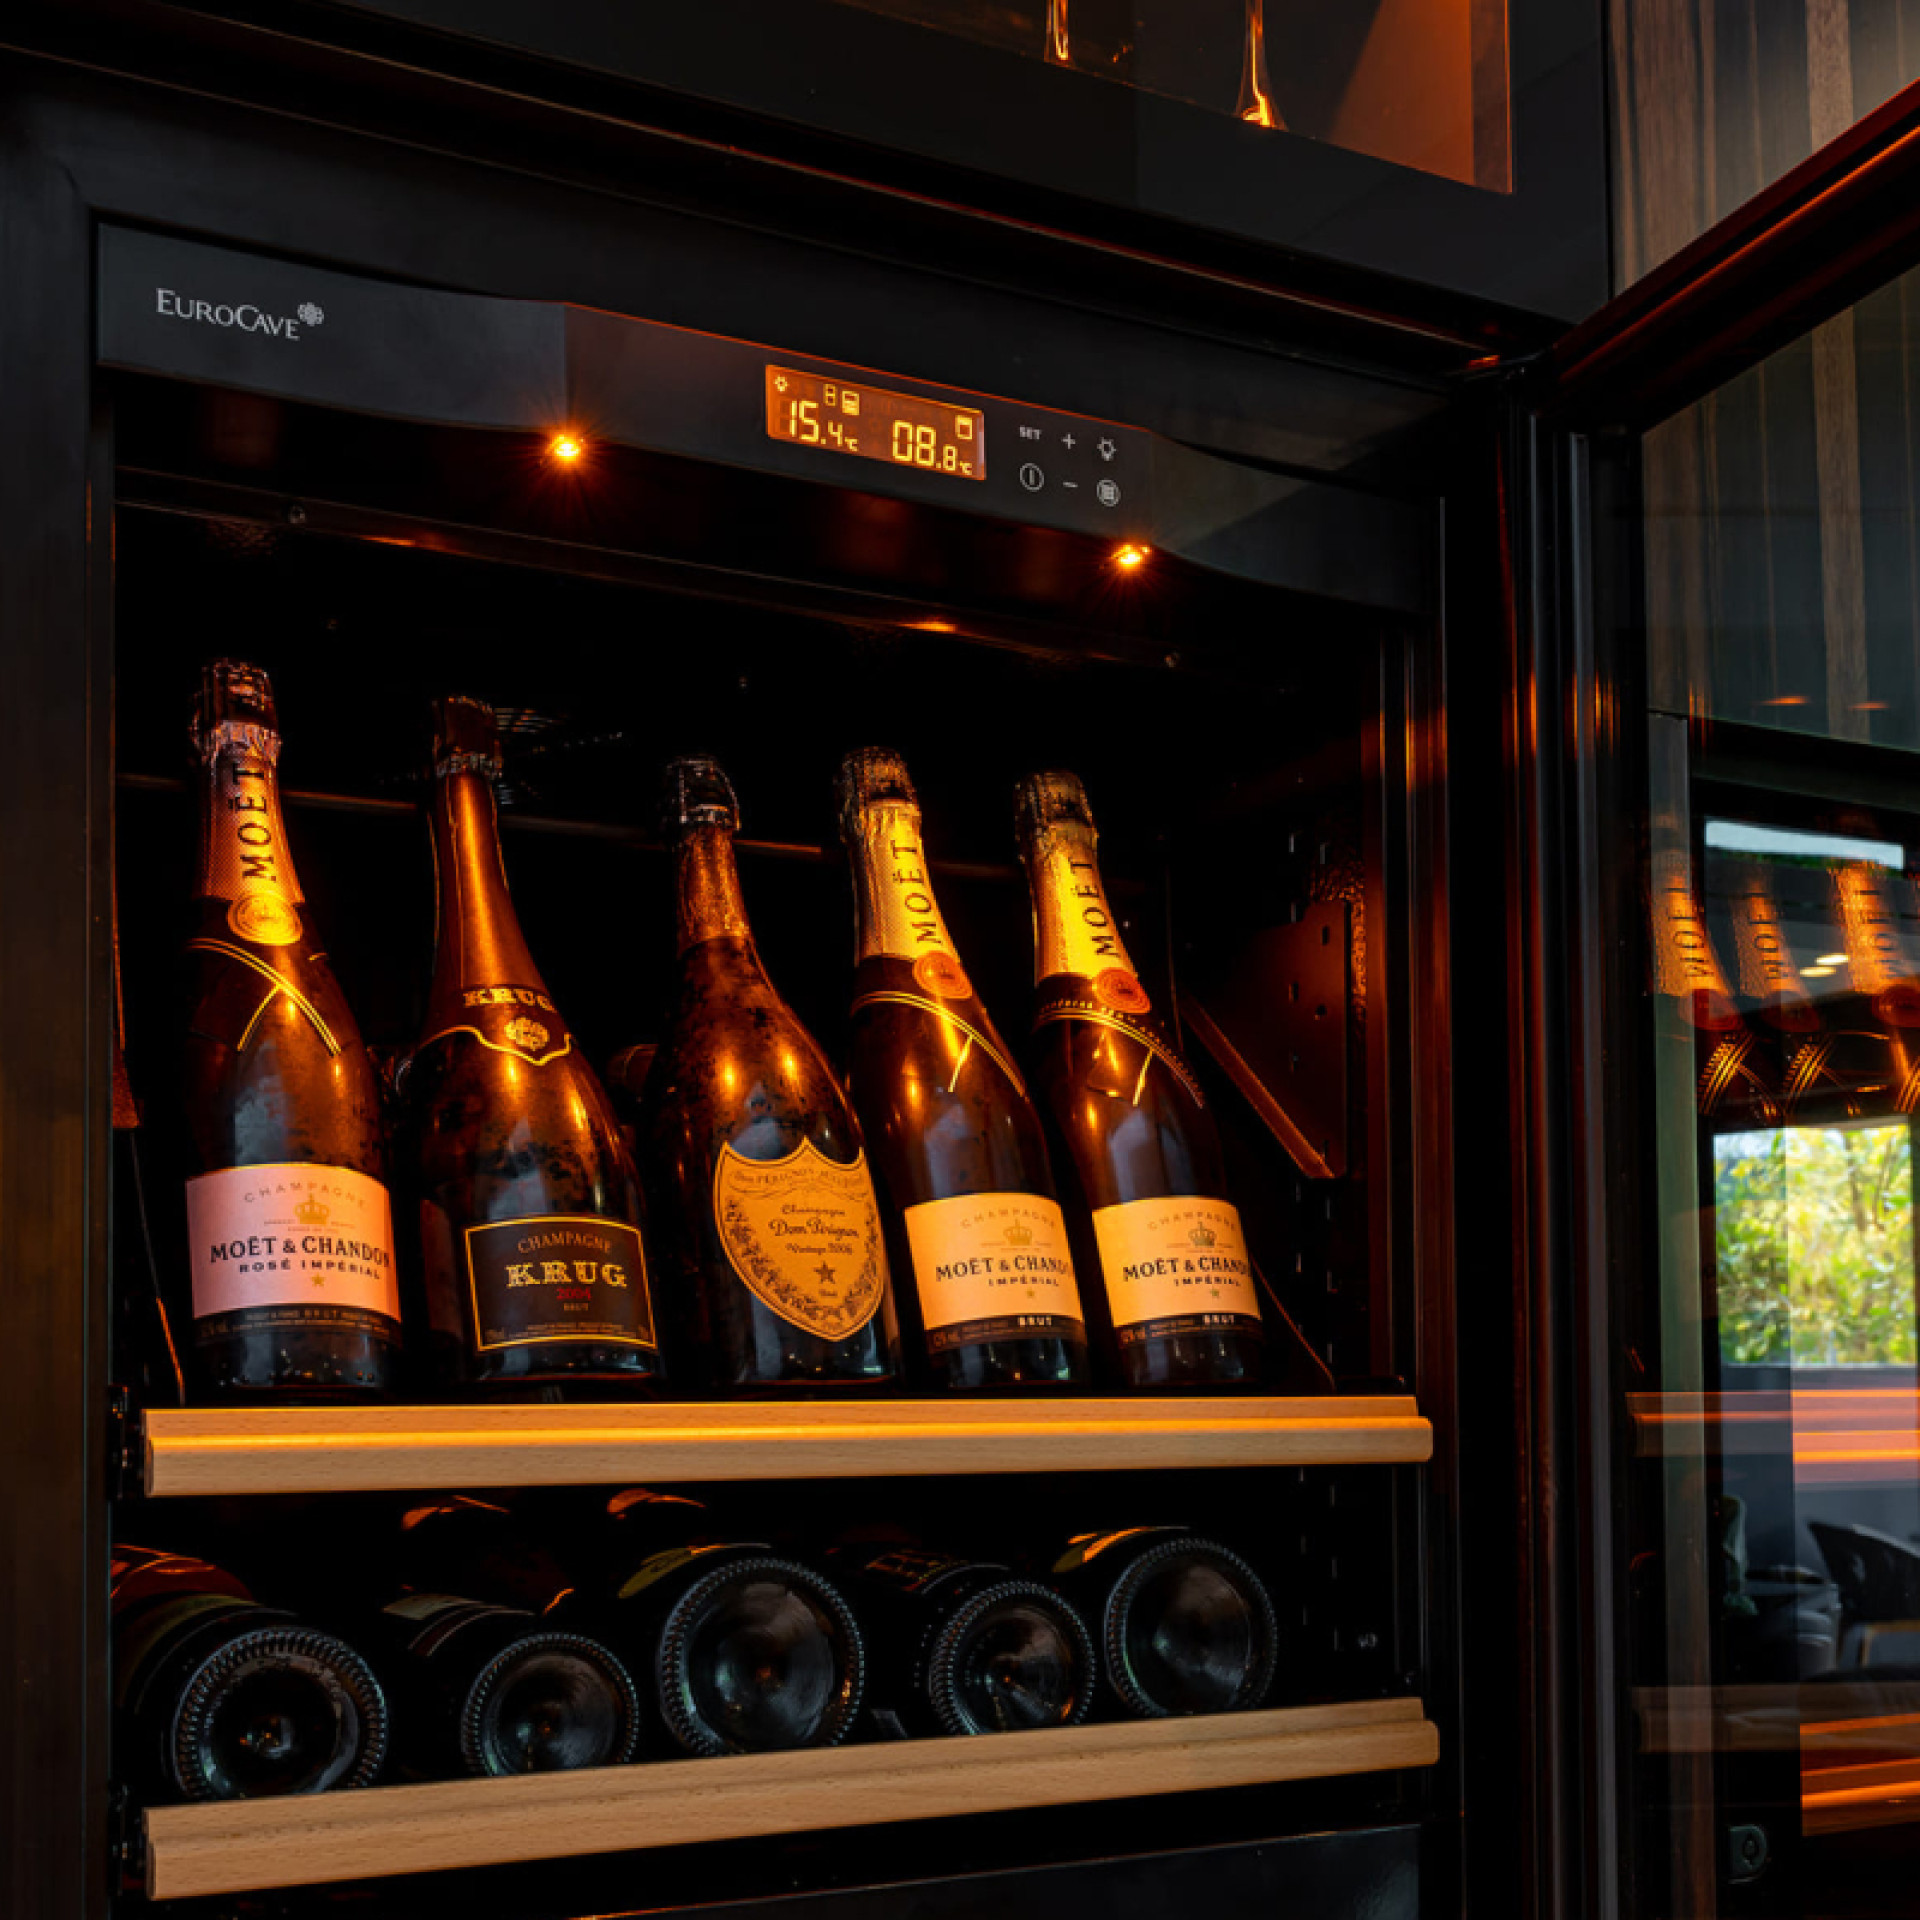 Clayette de présentation des bouteilles inclinées - tous types de bouteilles possible dont les champagnes.